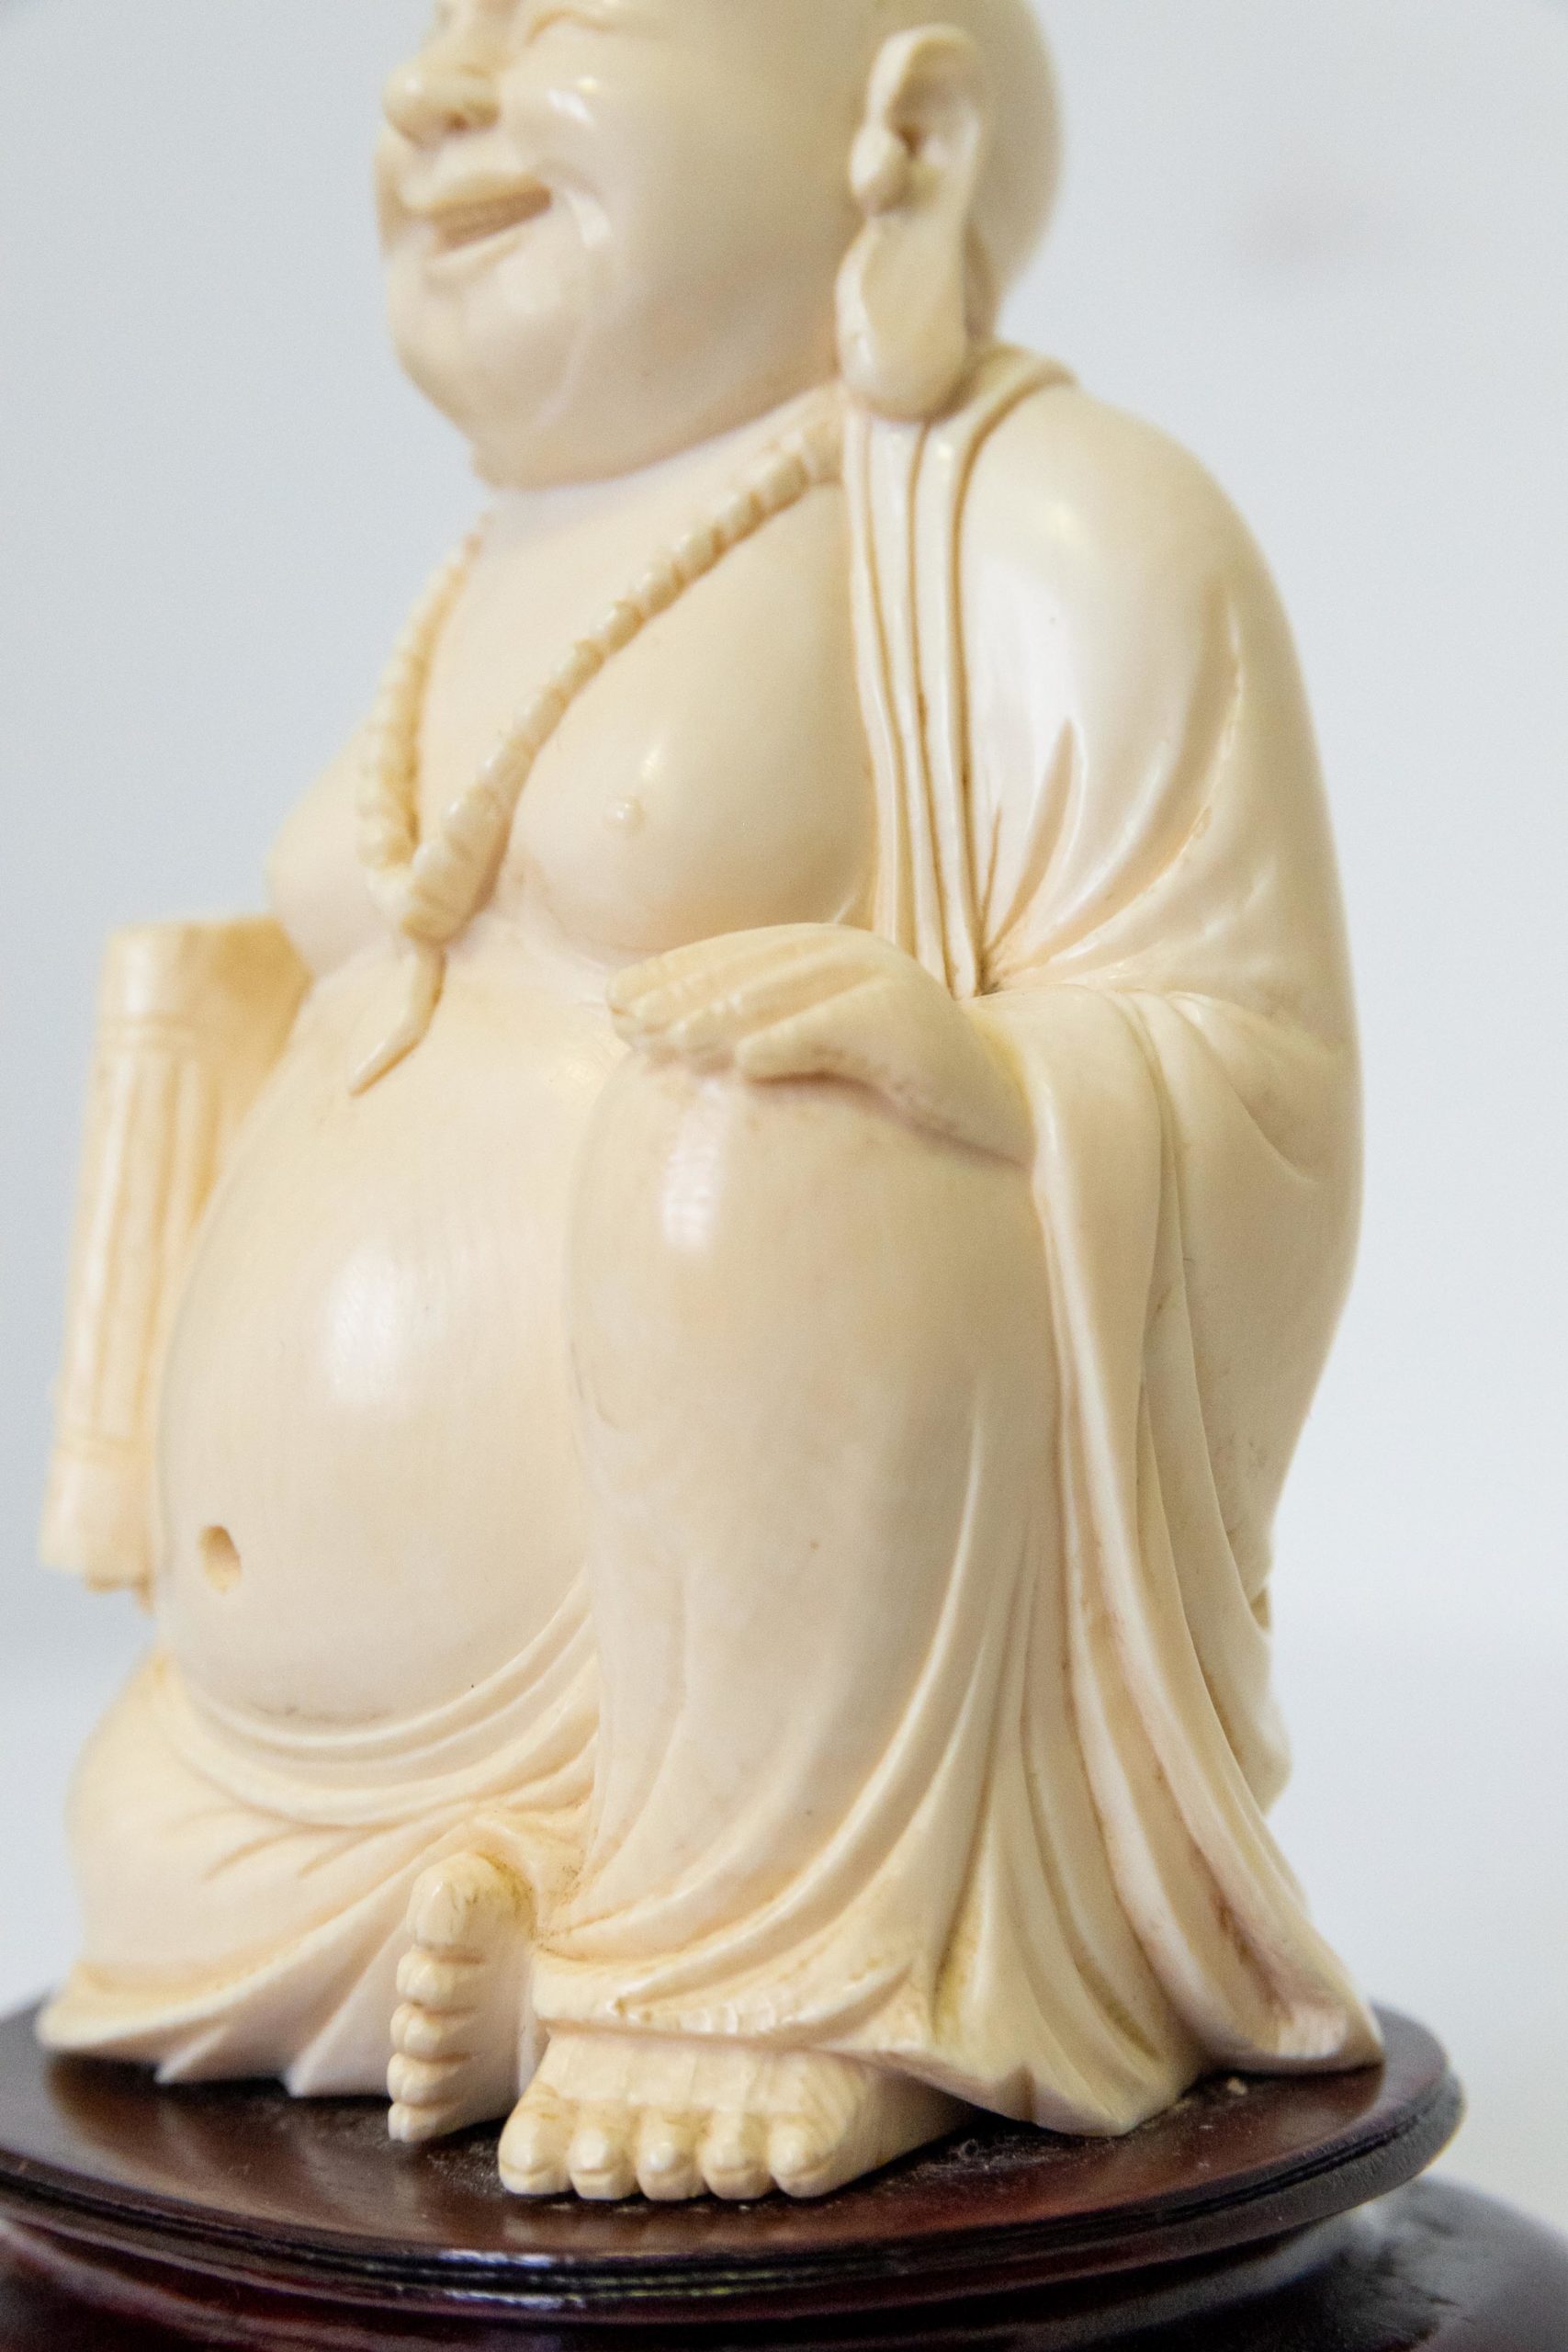 Sculpture-asiatique-bouddha-XIXe-1900-aurore-morisse-antiquaire-aurore-morisse-collection-décoration-antiquités-expertise-affaire-conclue18